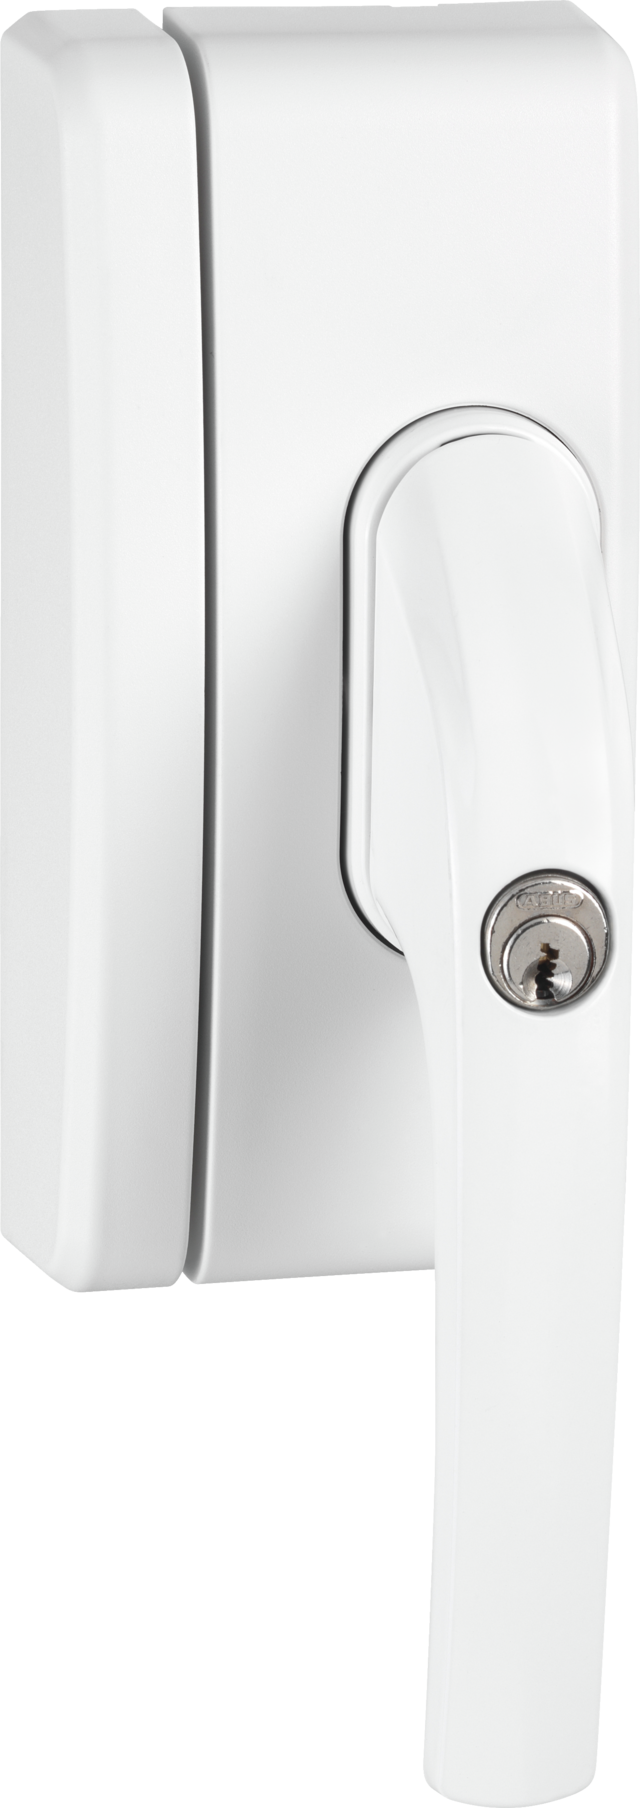 Secvest draadloze venstergreepbeveiliging FO 400 E - AL0125 (wit) vooraanzicht rechts